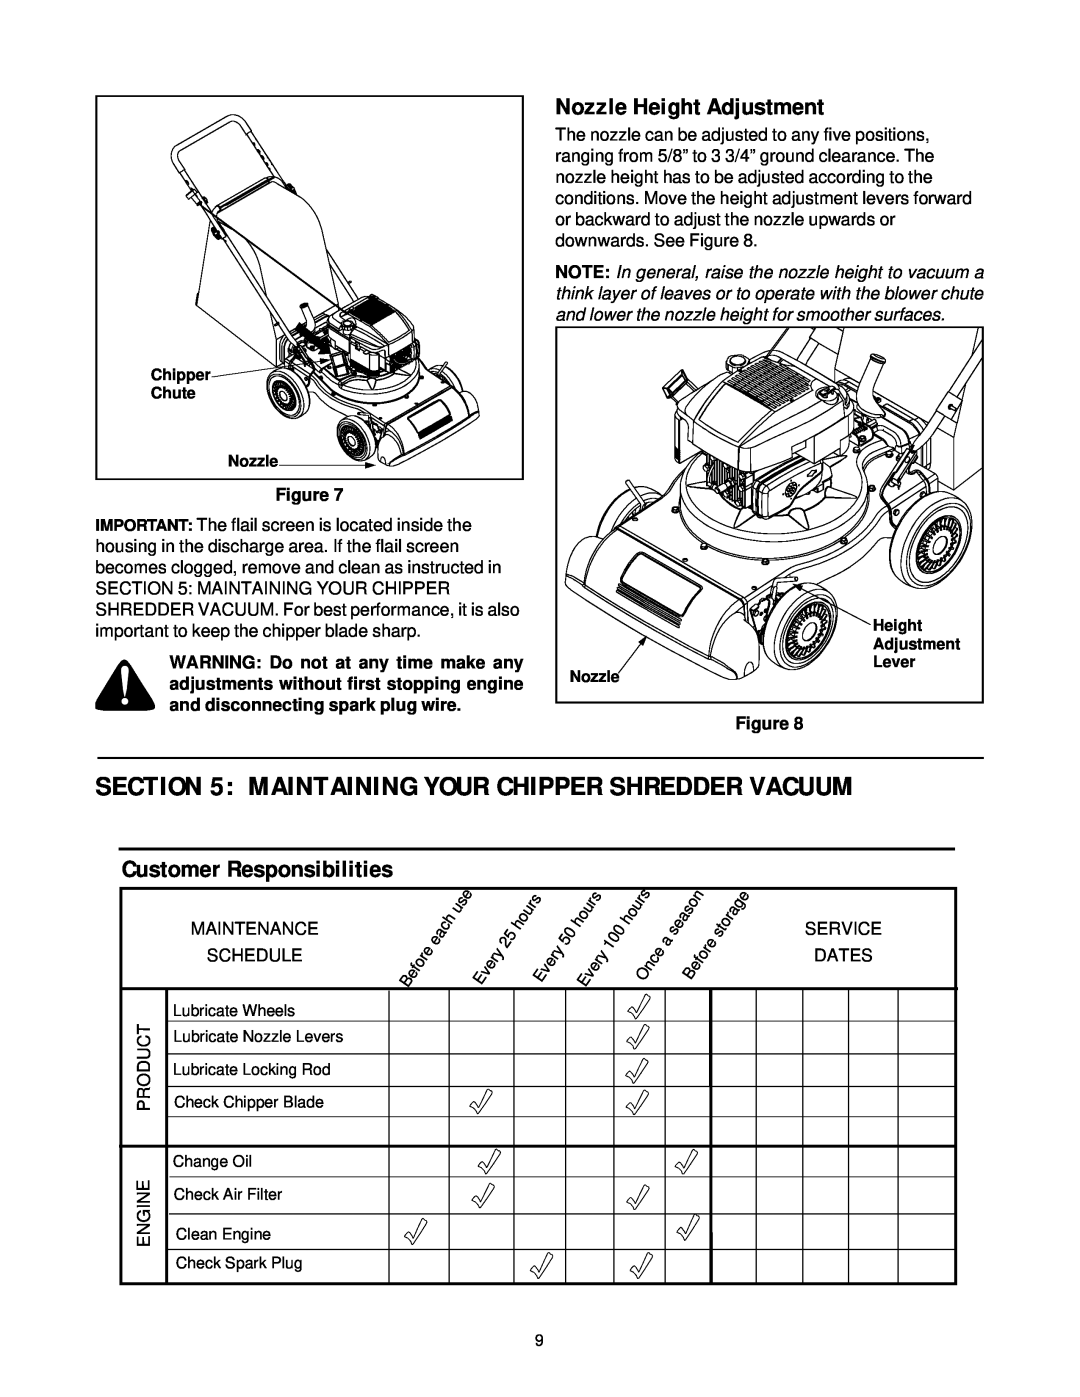 Cub Cadet 24A-030E100 manual Nozzle Height Adjustment, Customer Responsibilities, Figure 